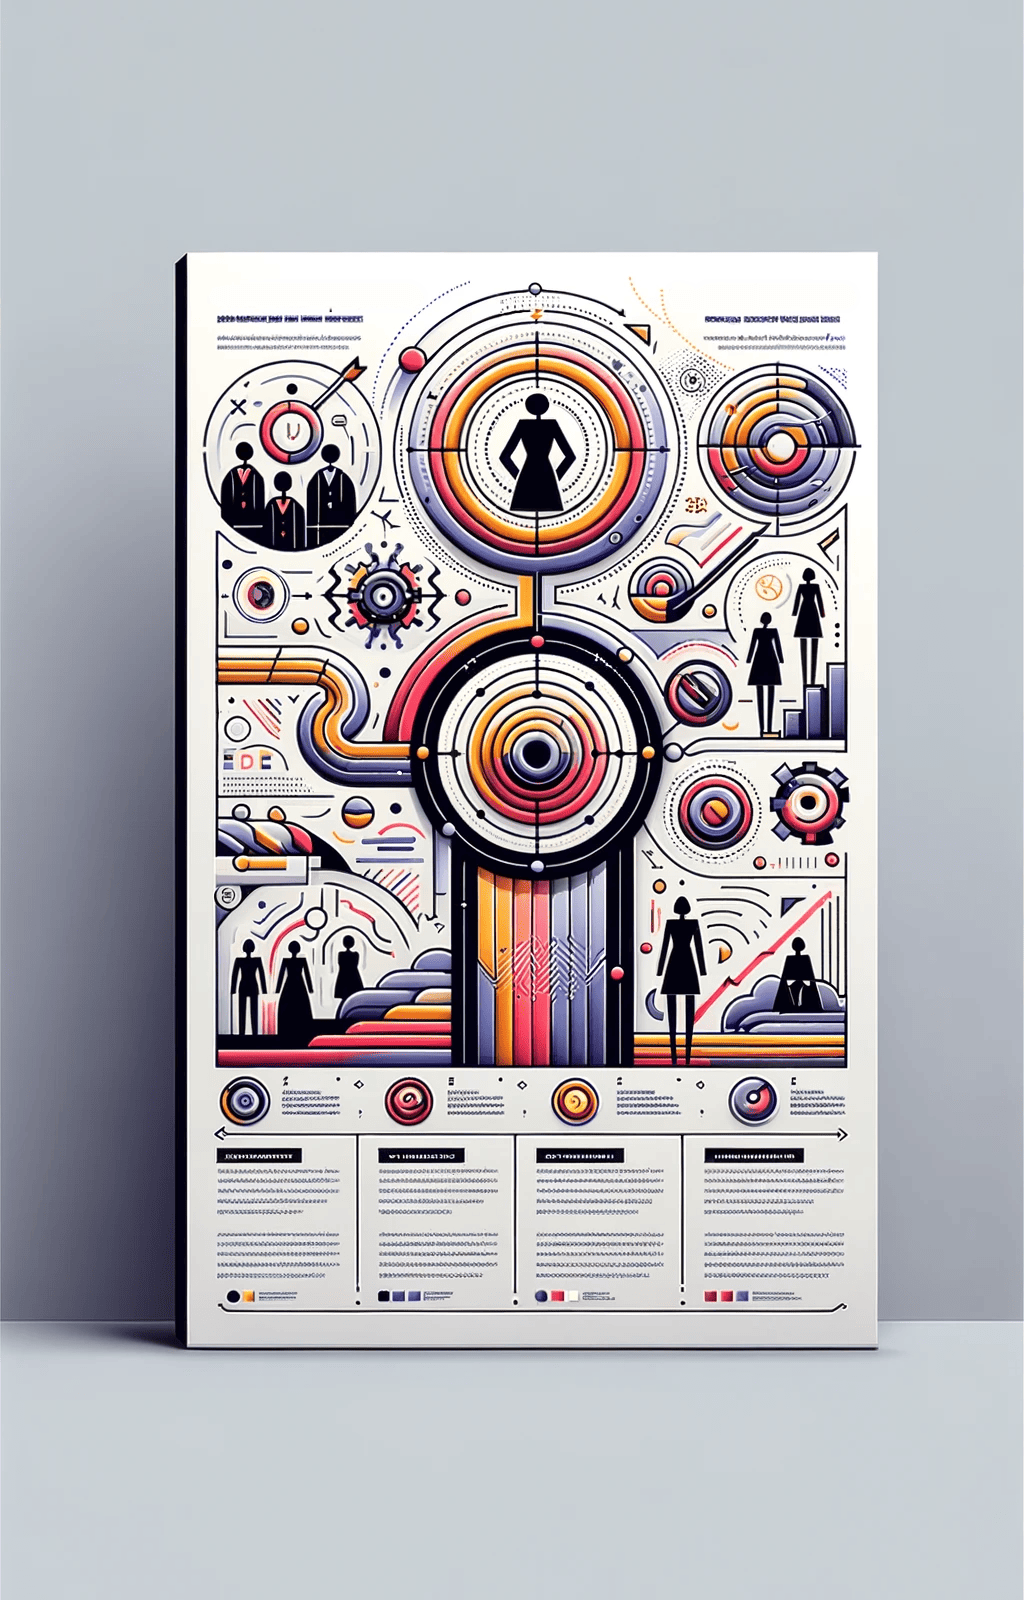 Vertikale Infografik im Fotostil, die das Zweite Führungspositionengesetz (FüPoG II) symbolisch illustriert.